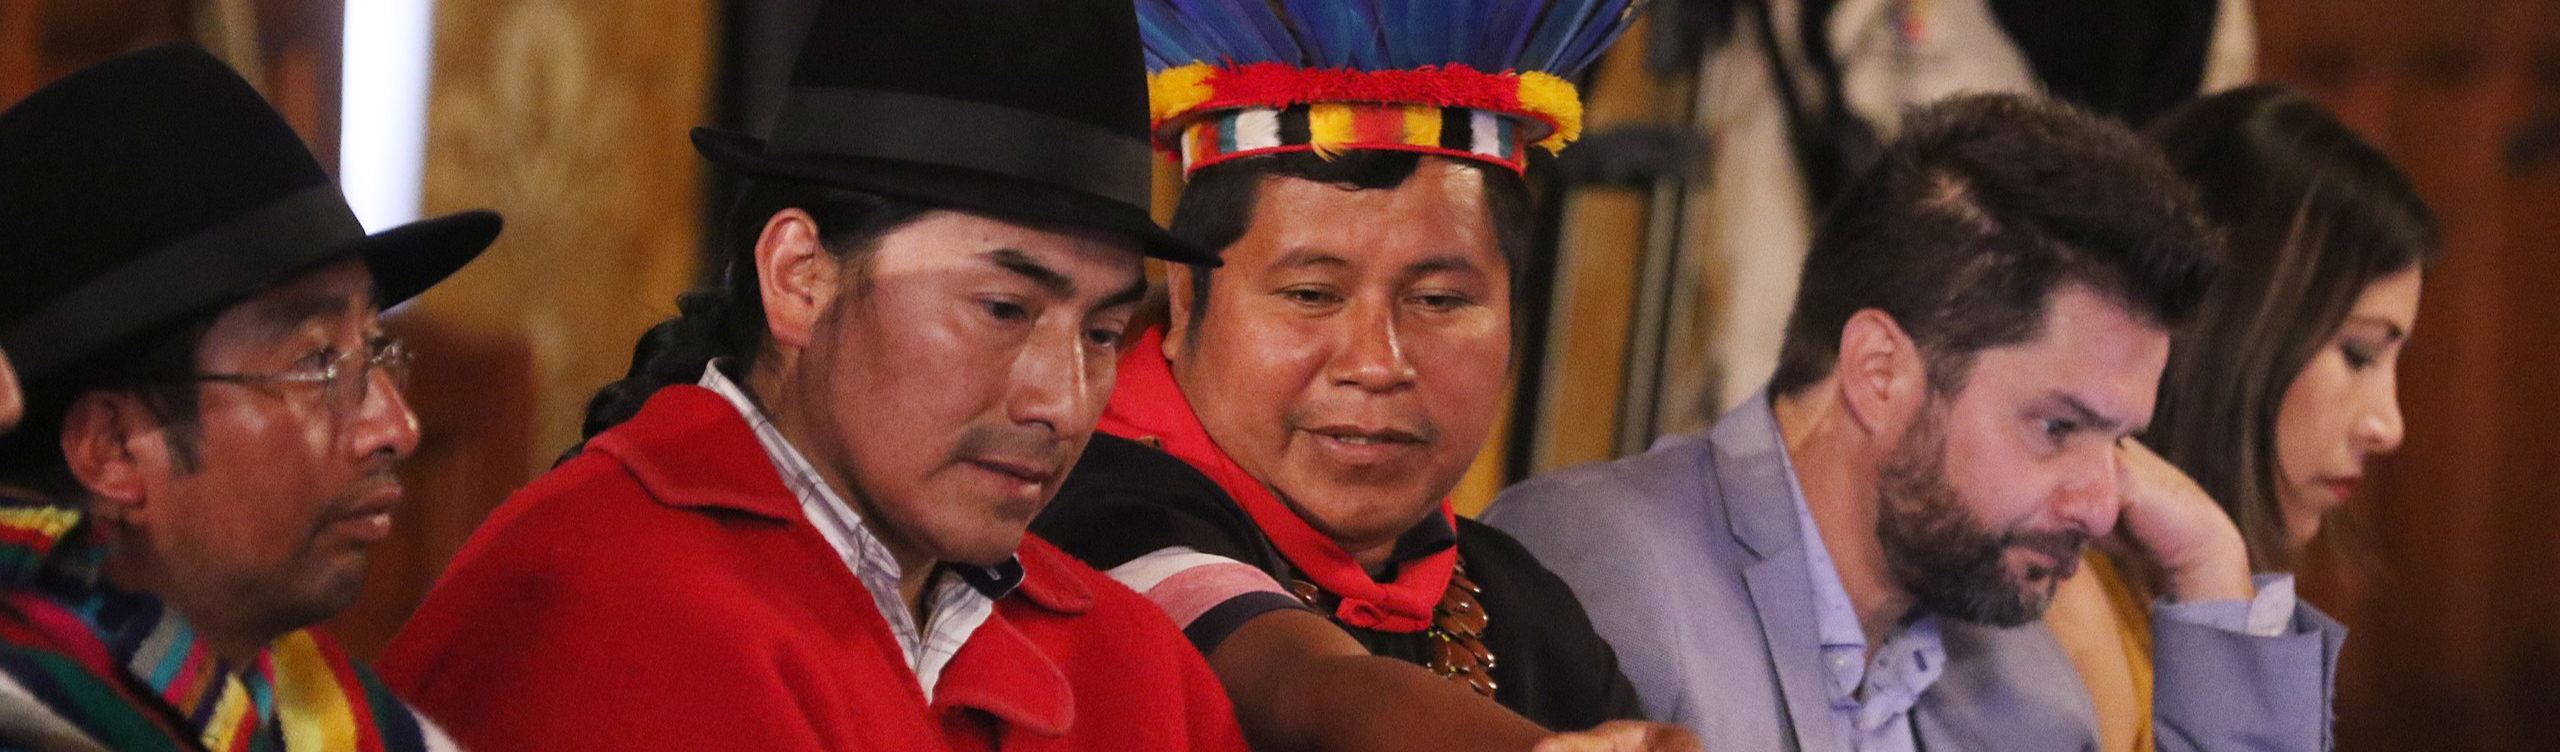 Movimento indígena do Equador declara resistência ao governo: "Lasso zomba da realidade de milhares de famílias"